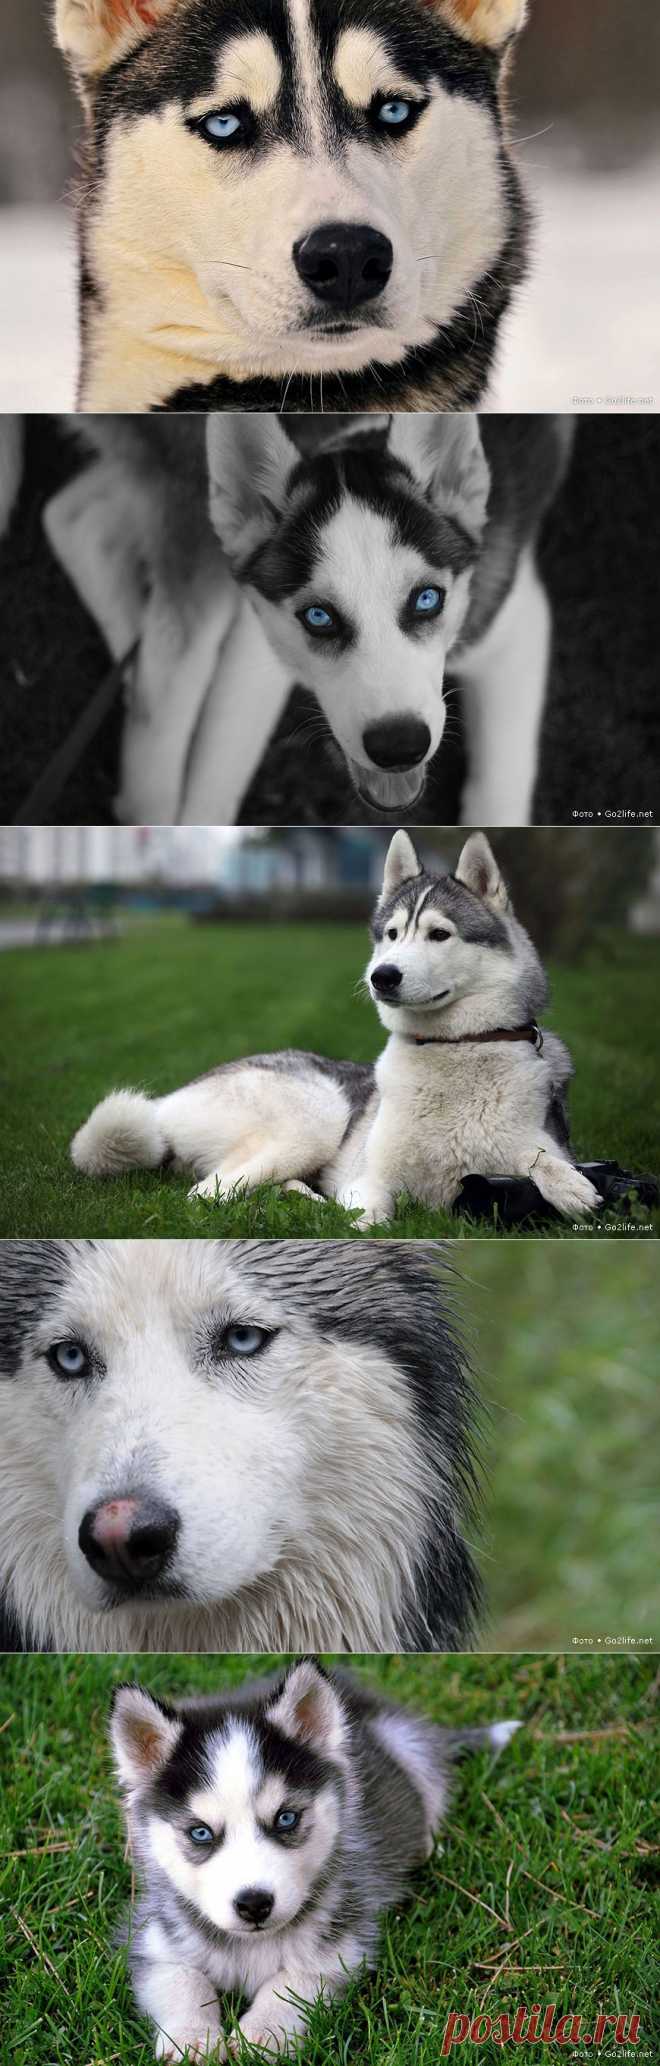 Хаски фото: нереально красивая собака с голубыми глазами » Большие фото новости: ты увидишь мир